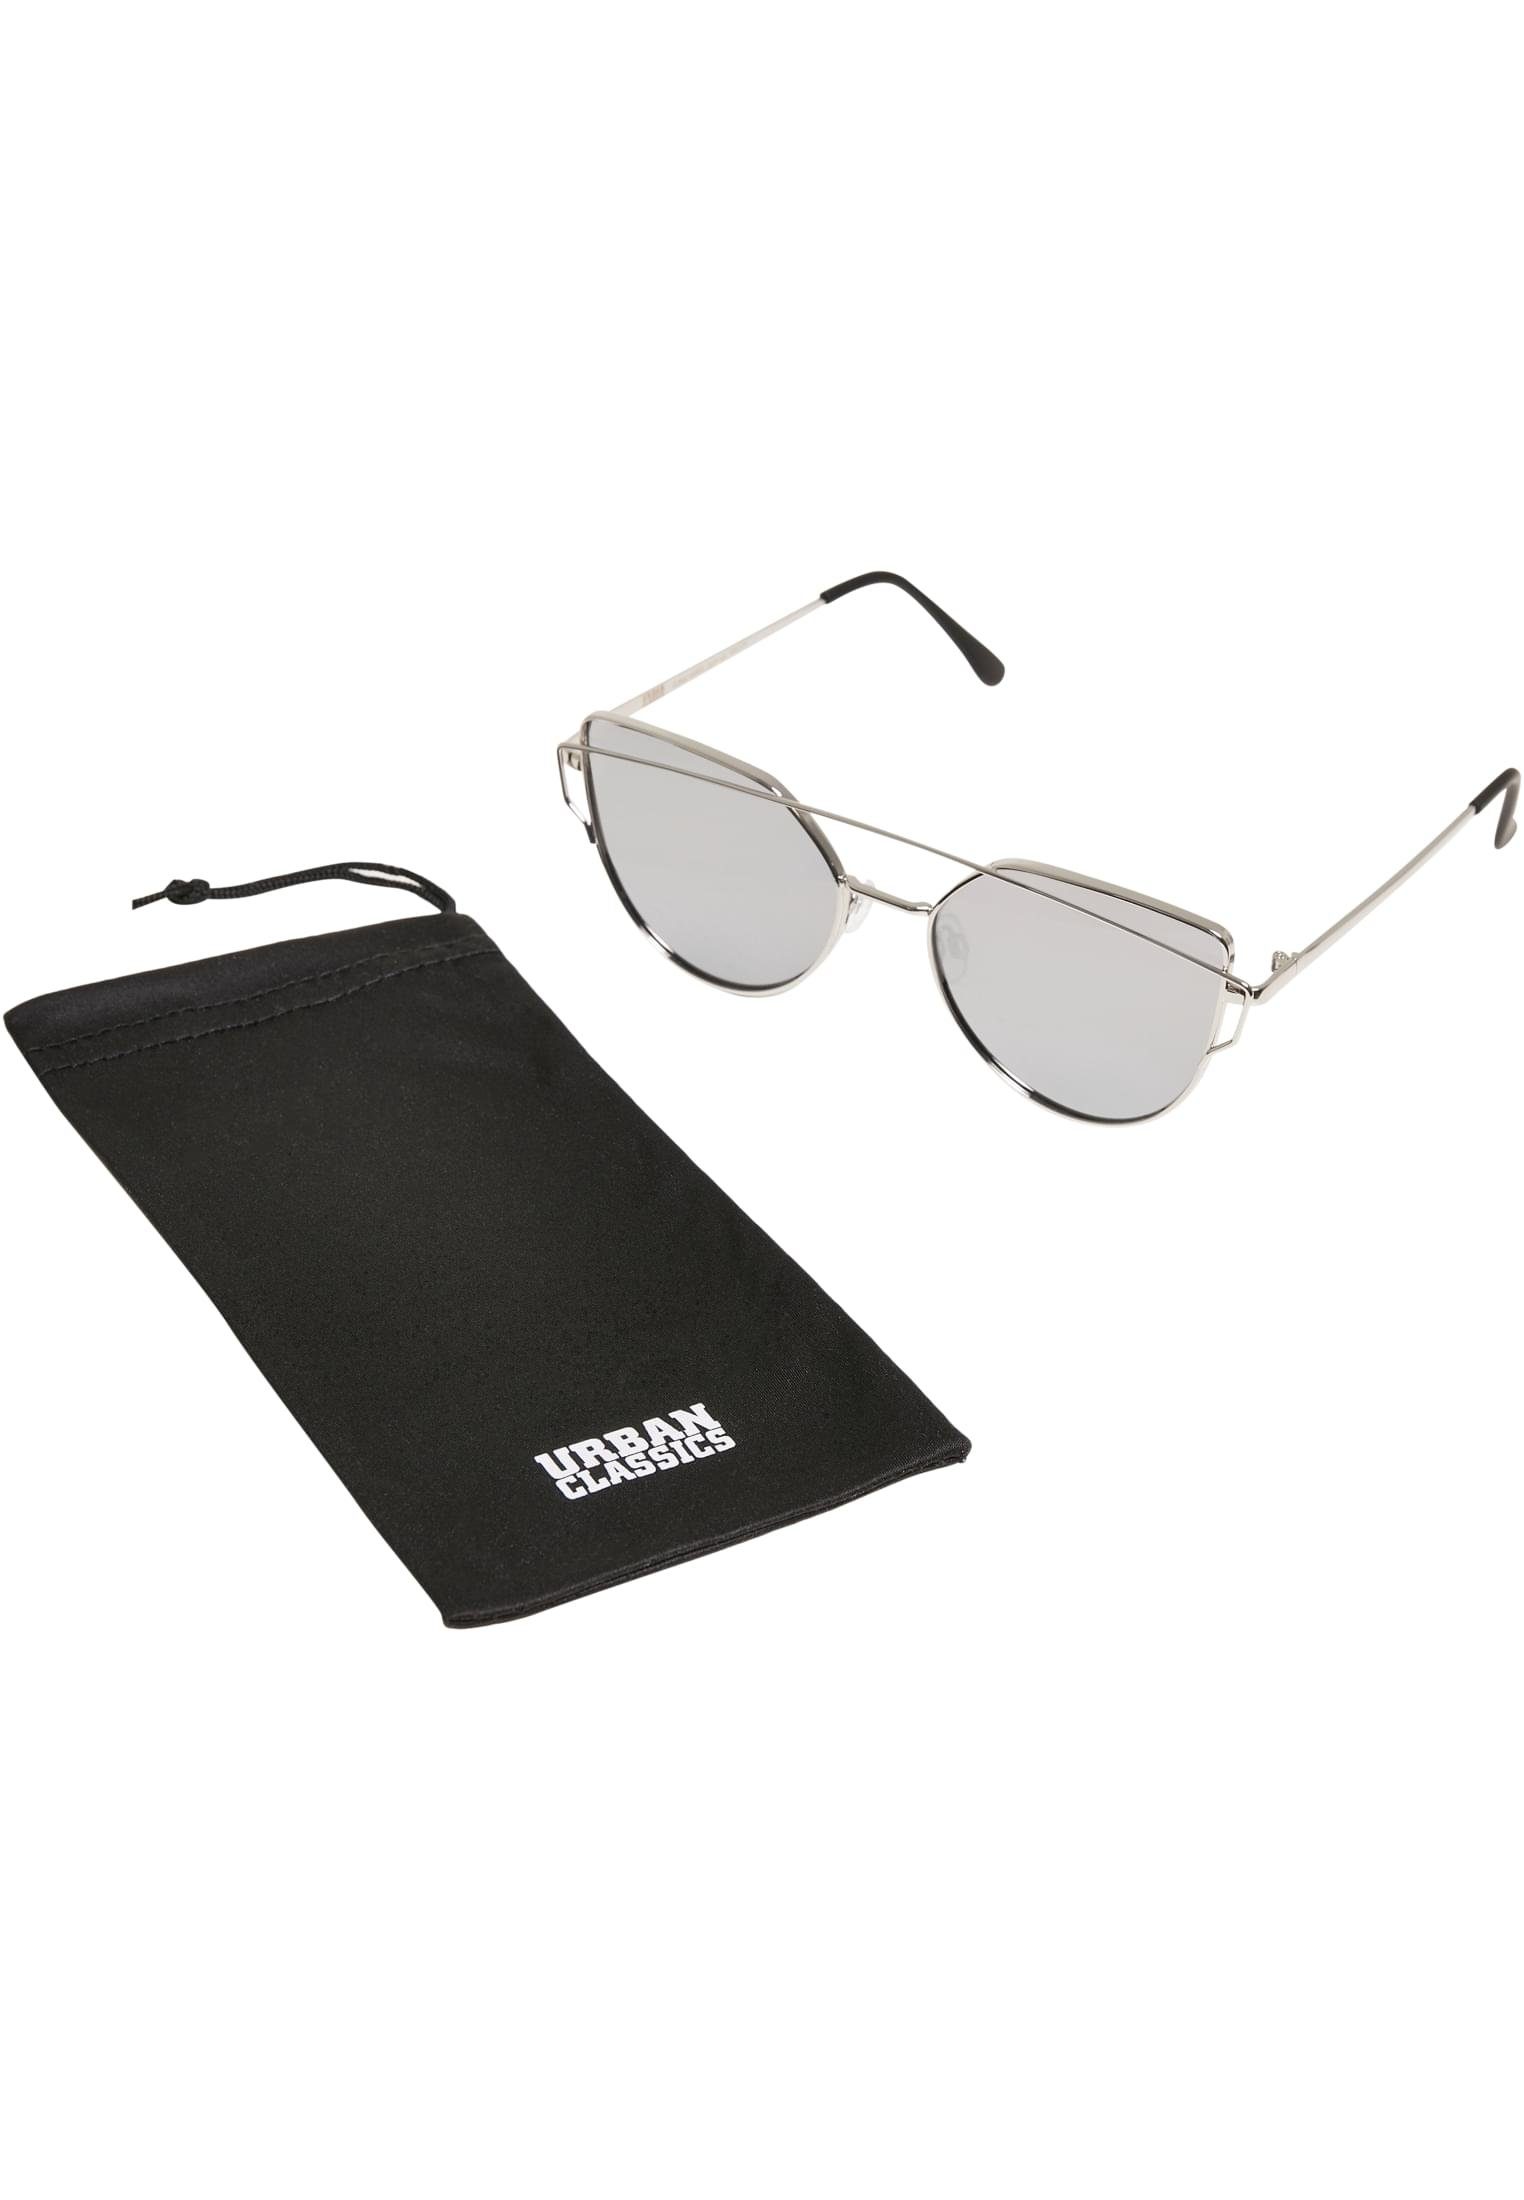 URBAN CLASSICS Sonnenbrille Accessoires Sunglasses July UC silver | Sonnenbrillen